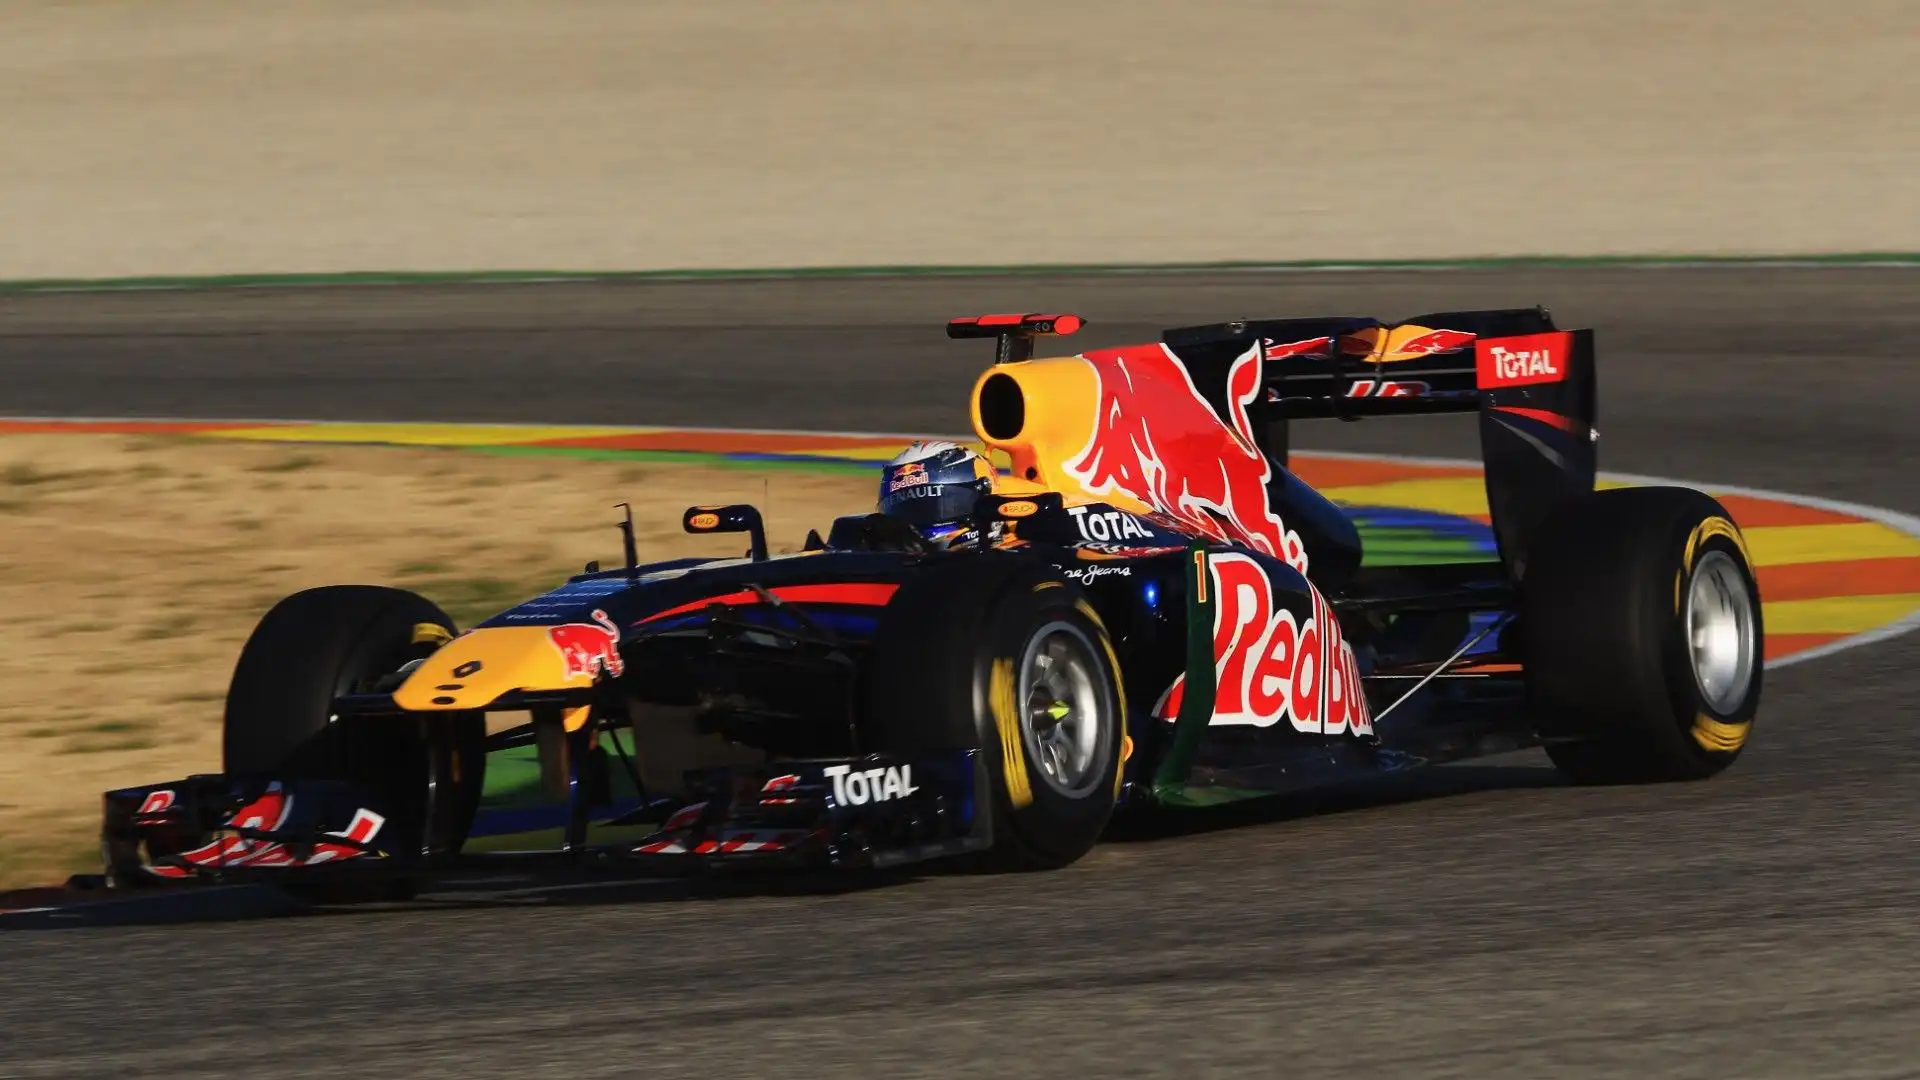 Red Bull RB7 (2011) - La Red Bull RB7 aveva un design aggressivo con un'ala posteriore a doppio piano e una presa d'aria posteriore a forma di Y